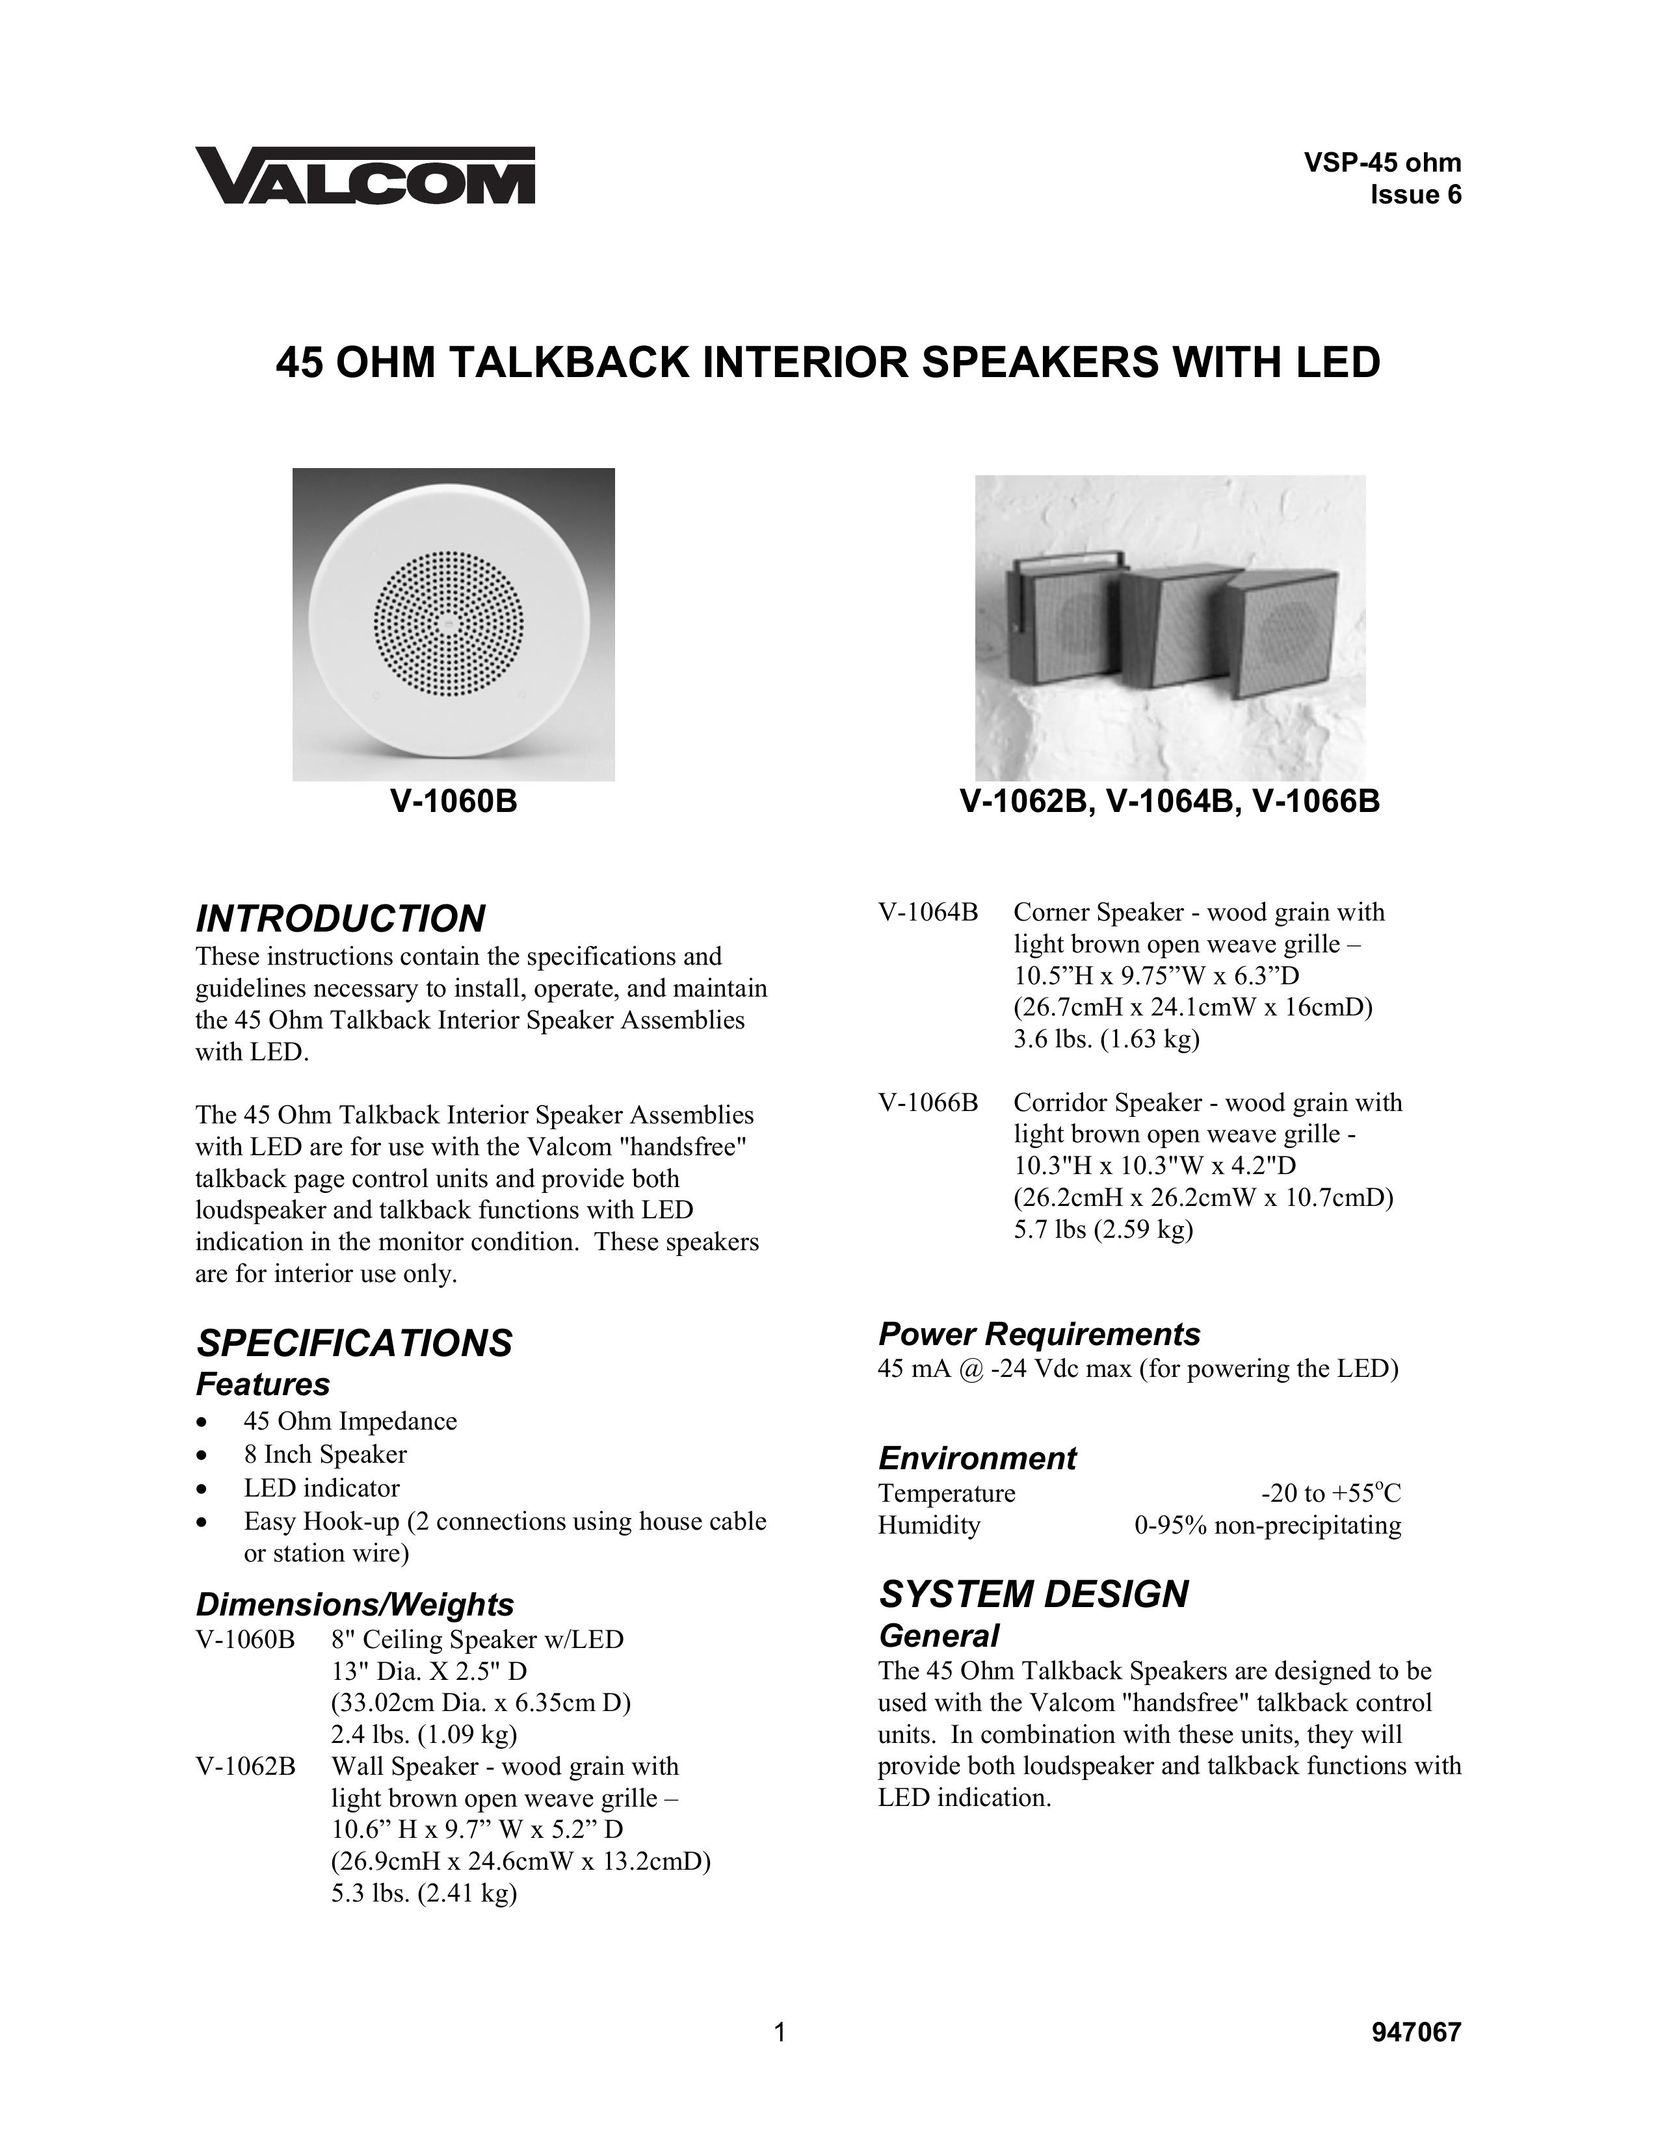 Valcom V-1064B Speaker User Manual